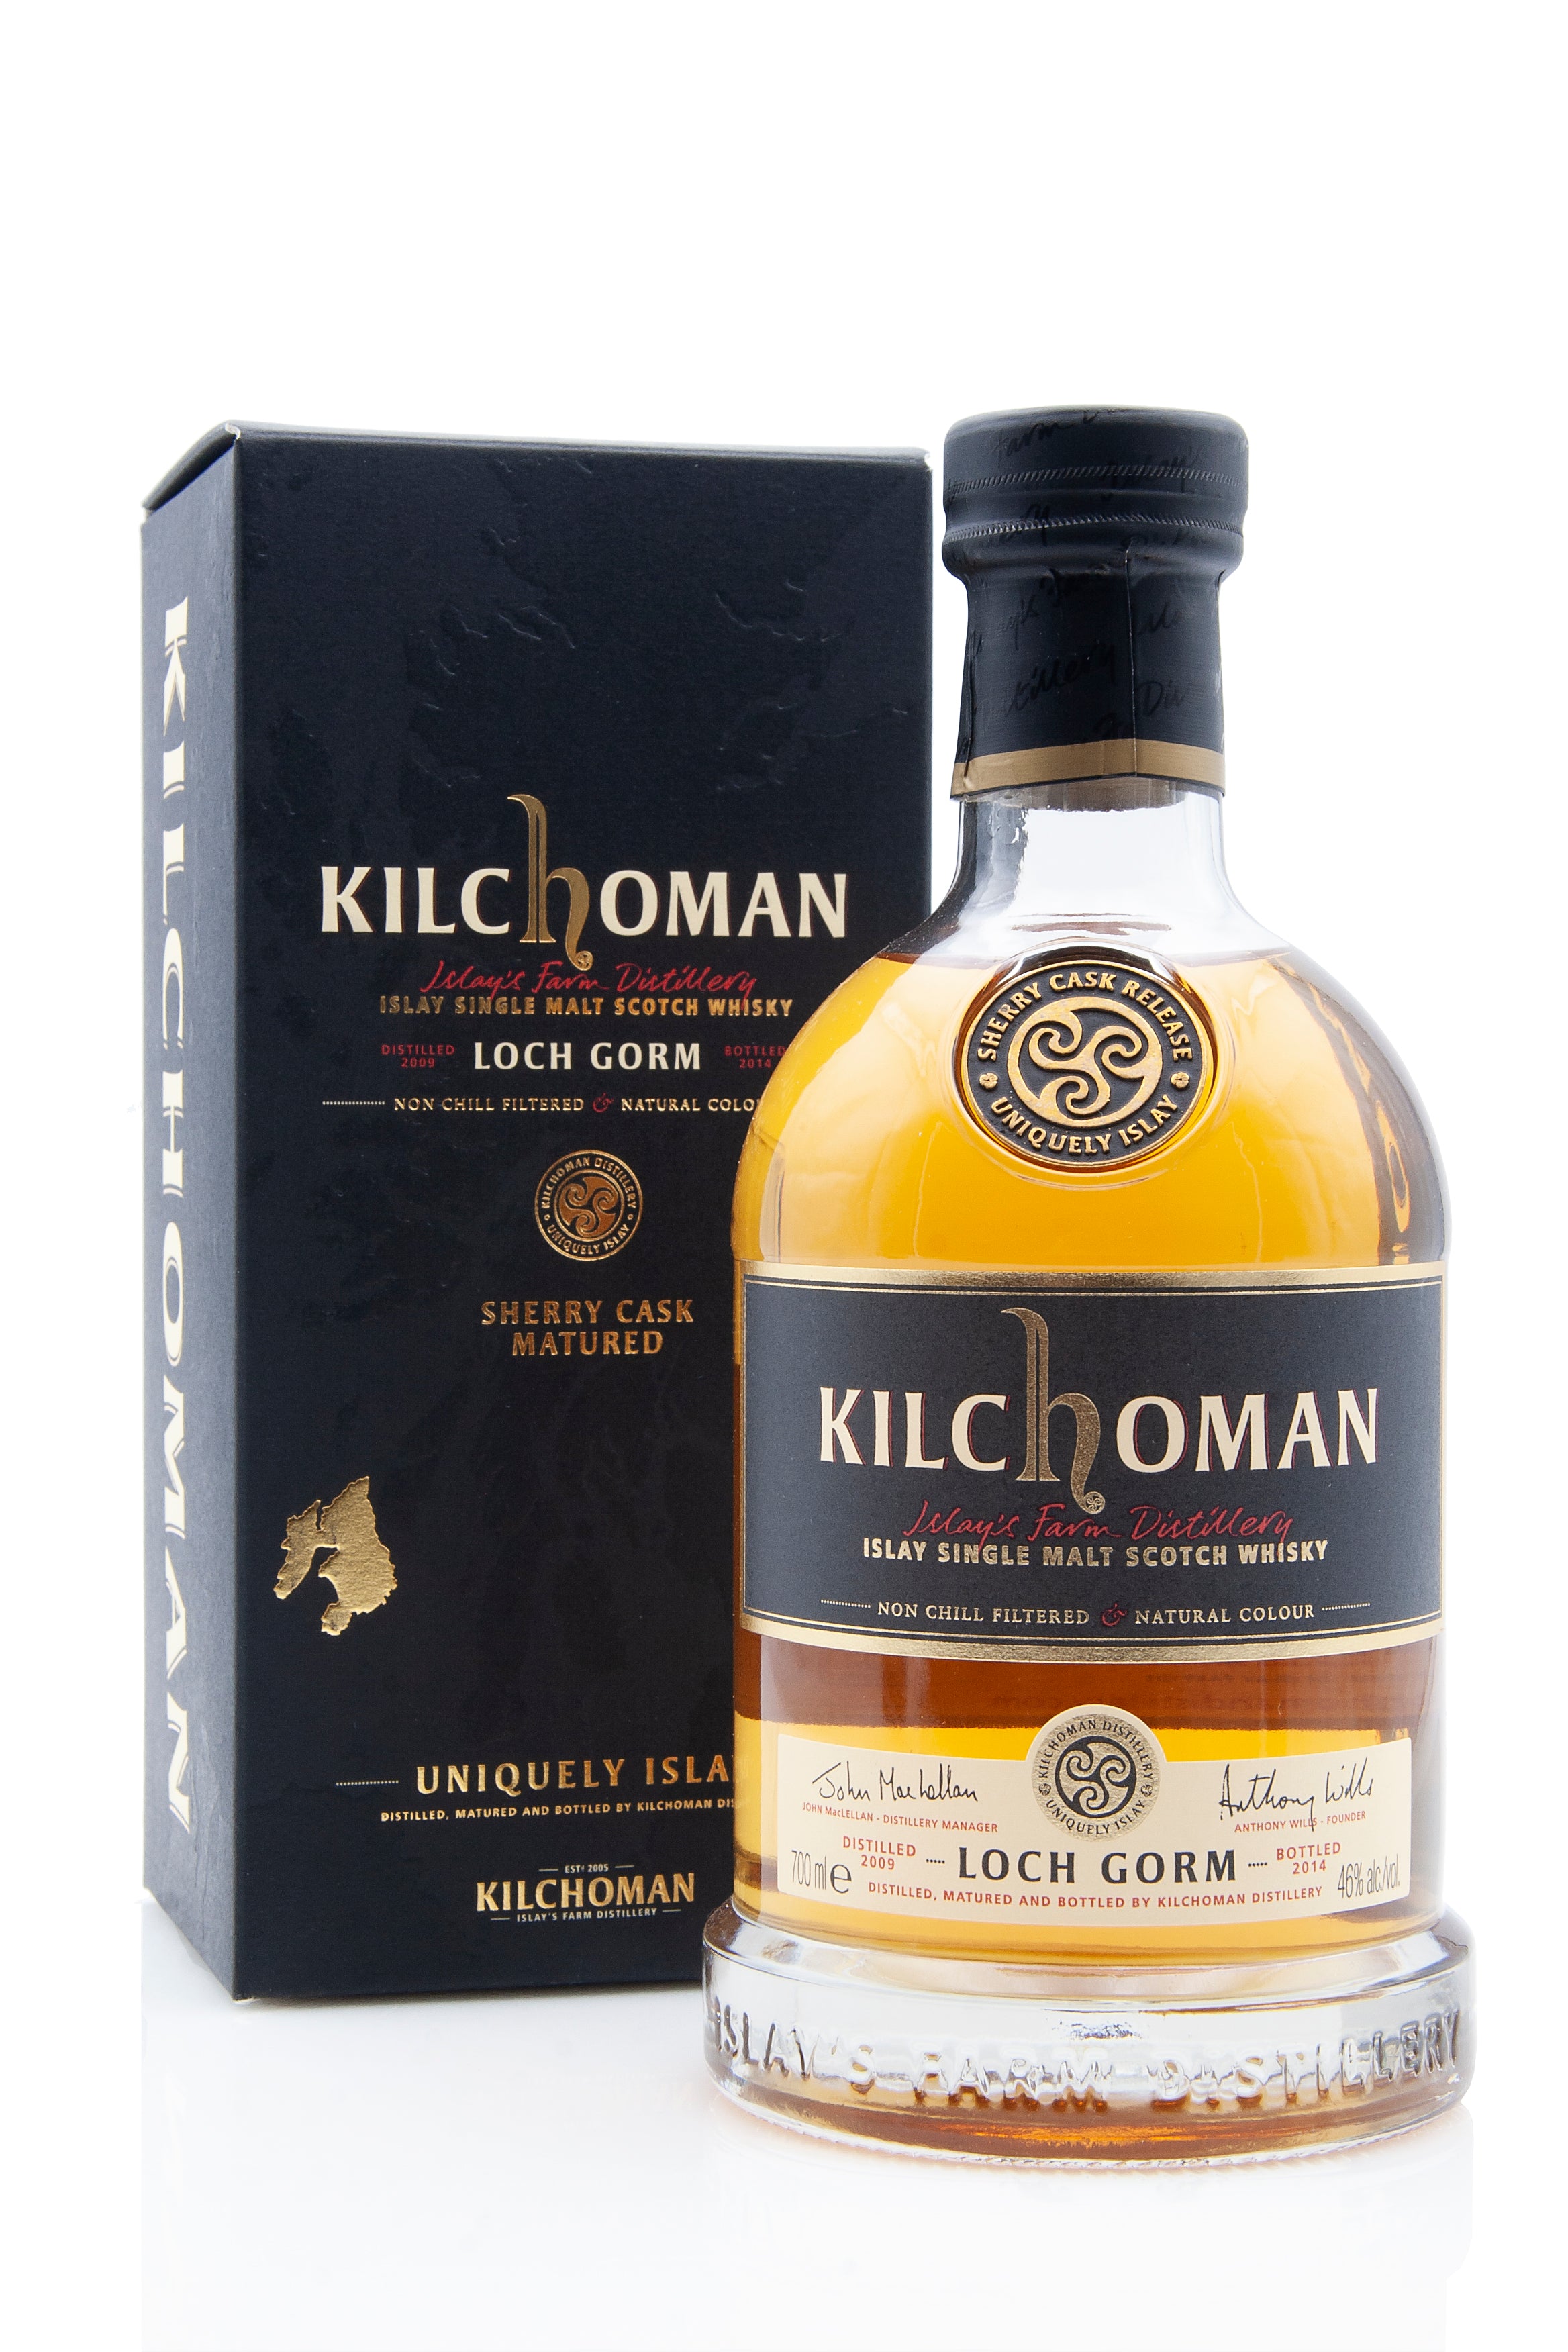 Kilchoman Loch Gorm 2014 Release | Abbey Whisky Online